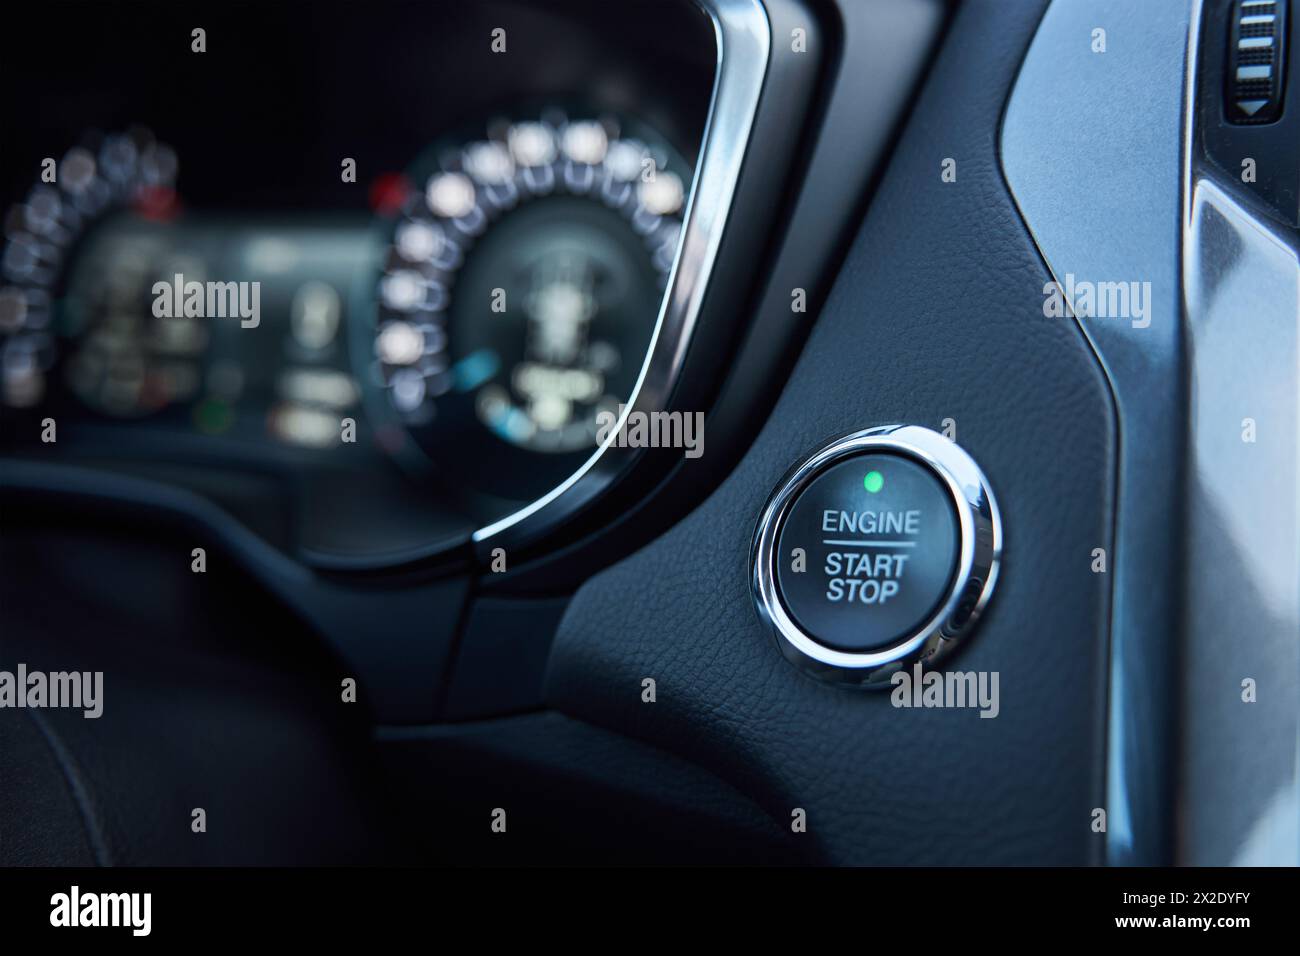 Tableau de bord de voiture avec bouton de démarrage du moteur sur le panneau. Intérieur de véhicule moderne Banque D'Images